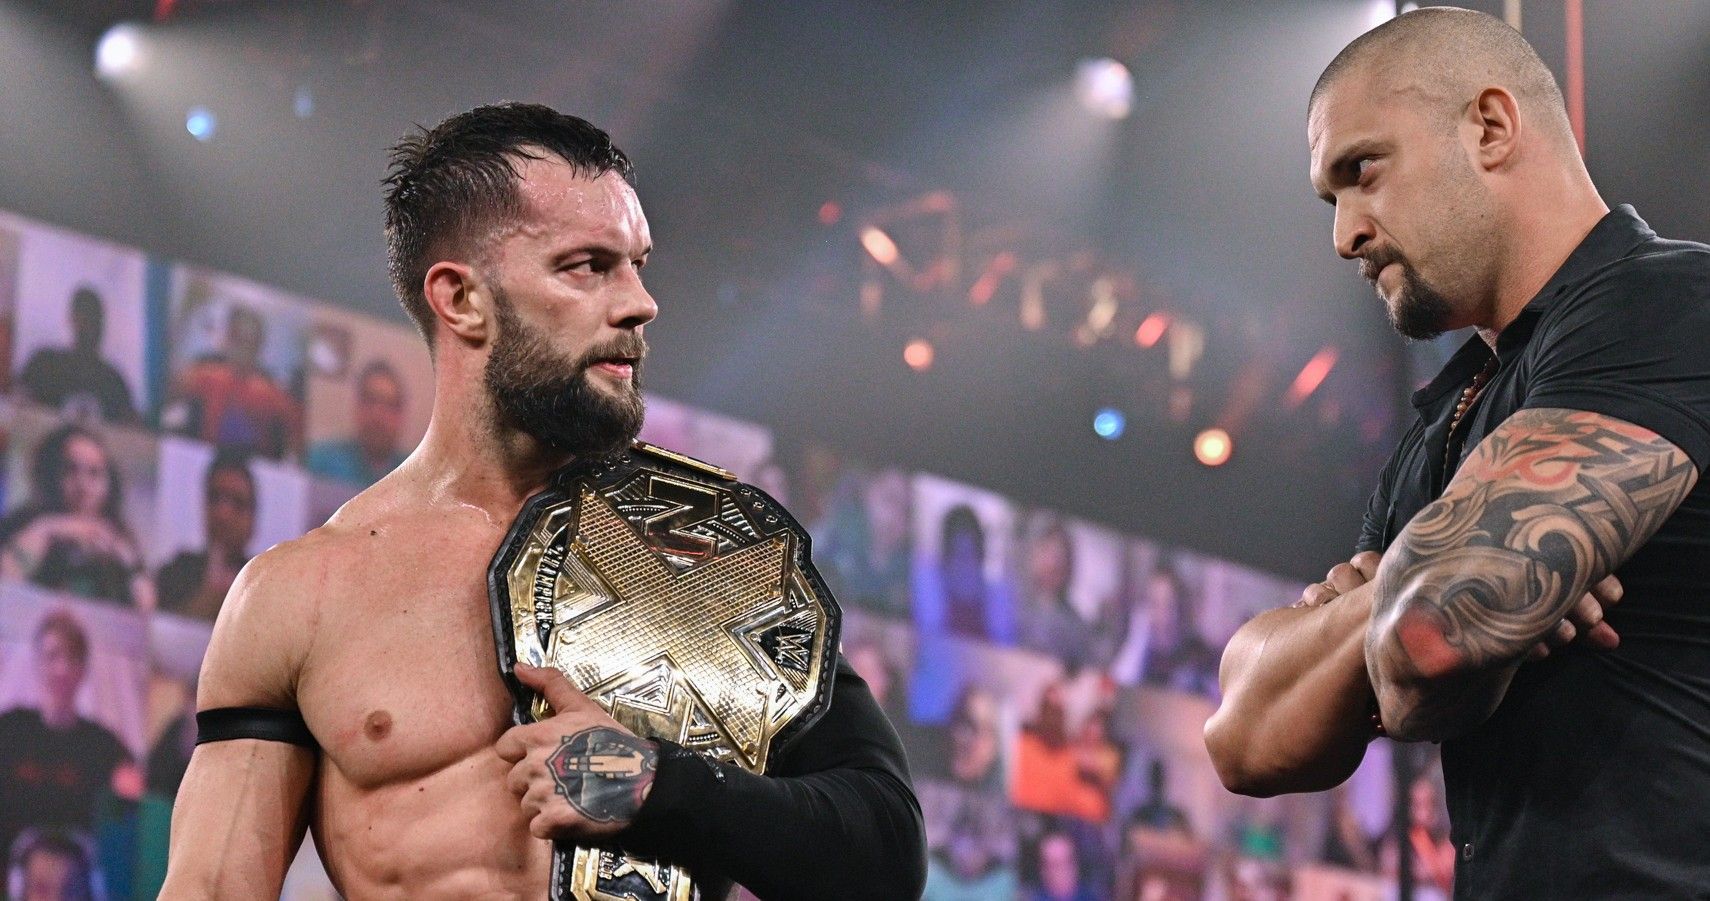 NXT superstars Finn Balor and Karrion Kross on NXT